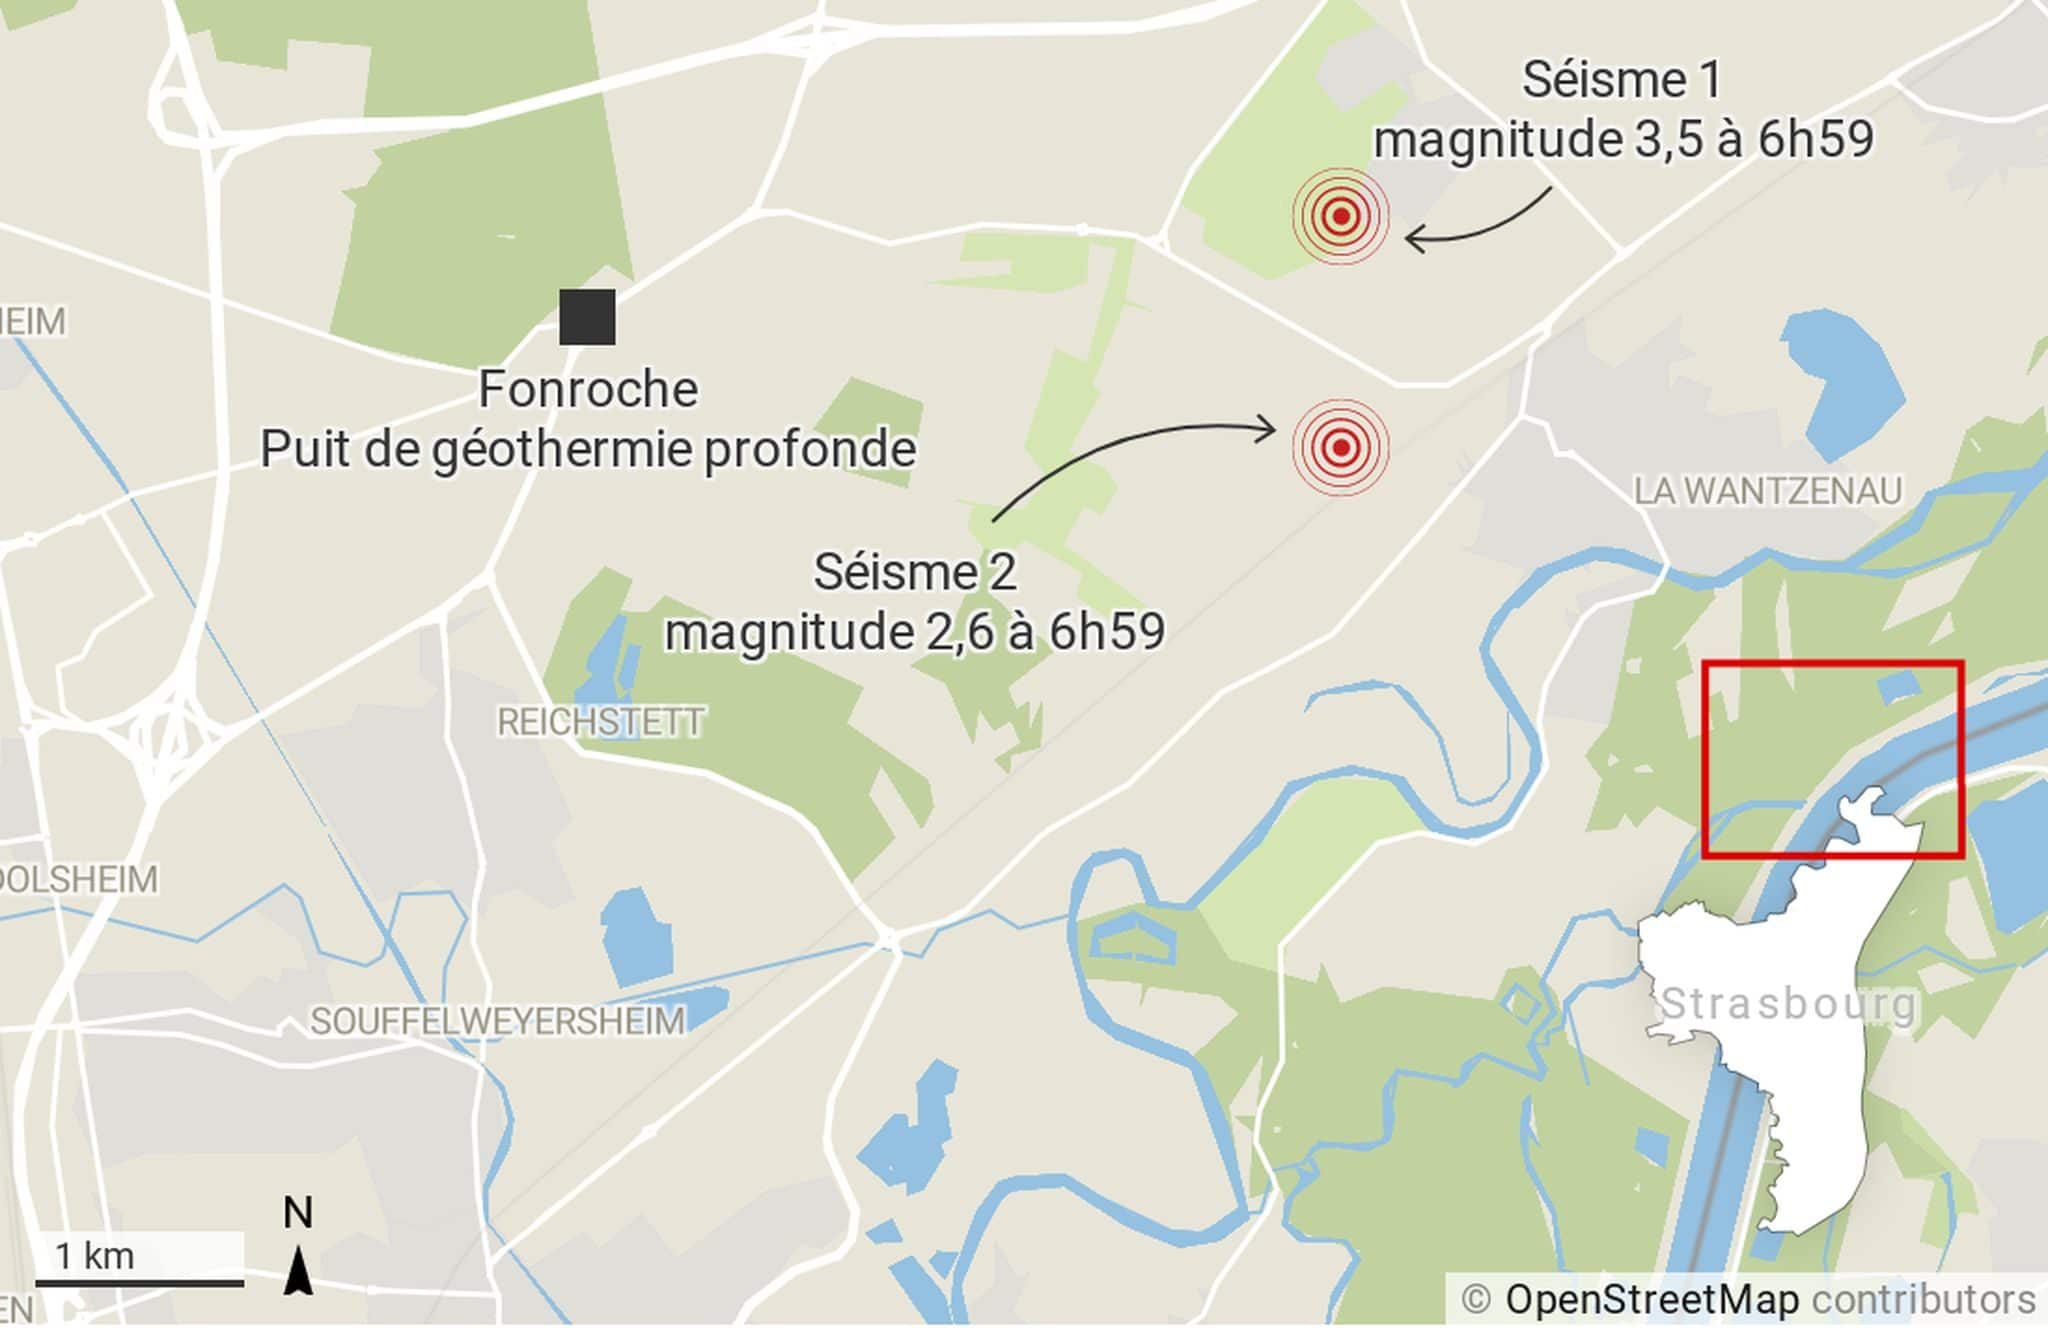 Après trois séismes au nord de Strasbourg, Fonroche annonce un arrêt complet temporaire du puits de géothermie